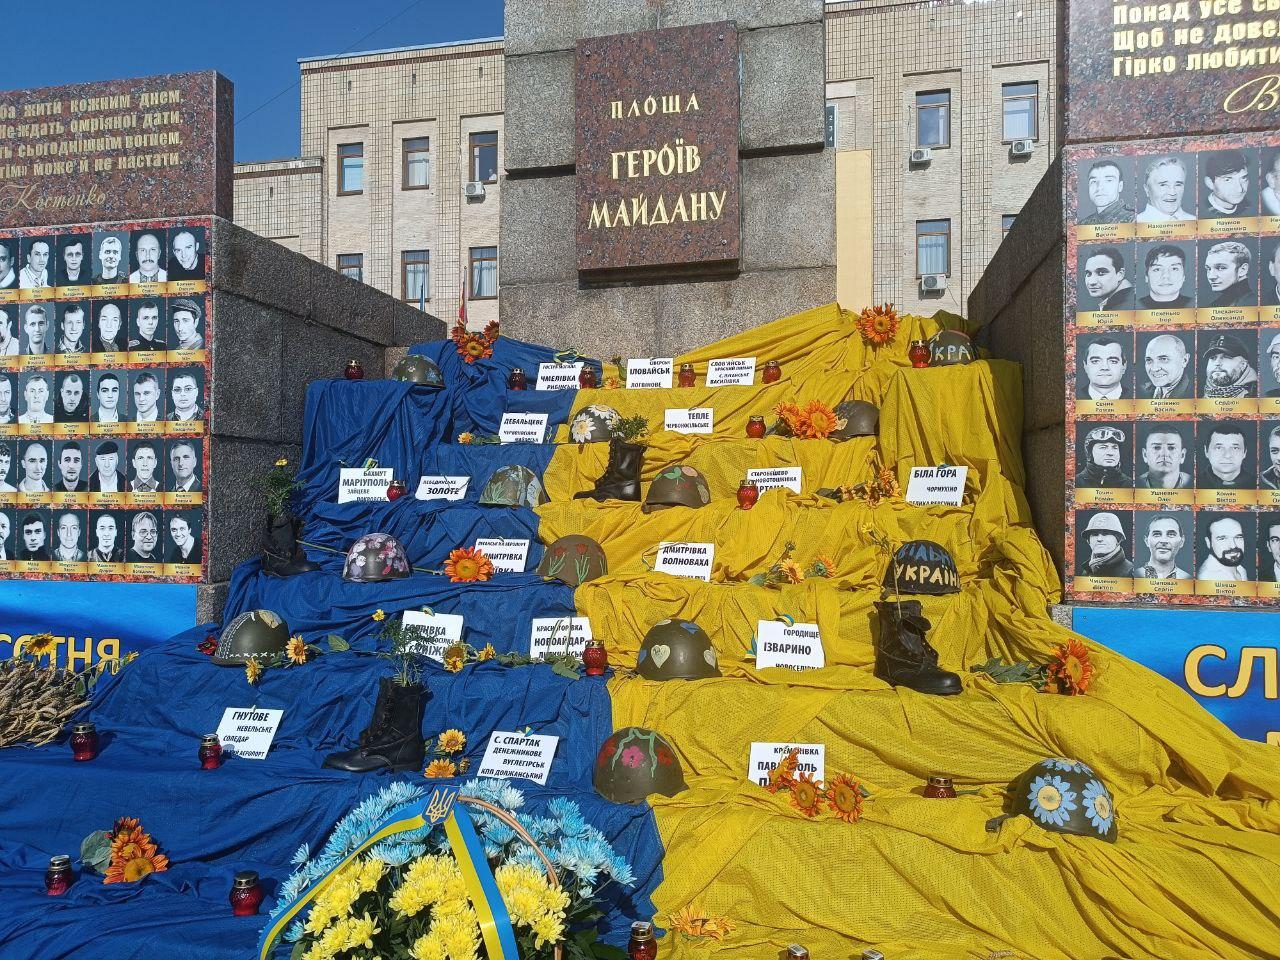 Інсталяція на площі Героїв Майдану